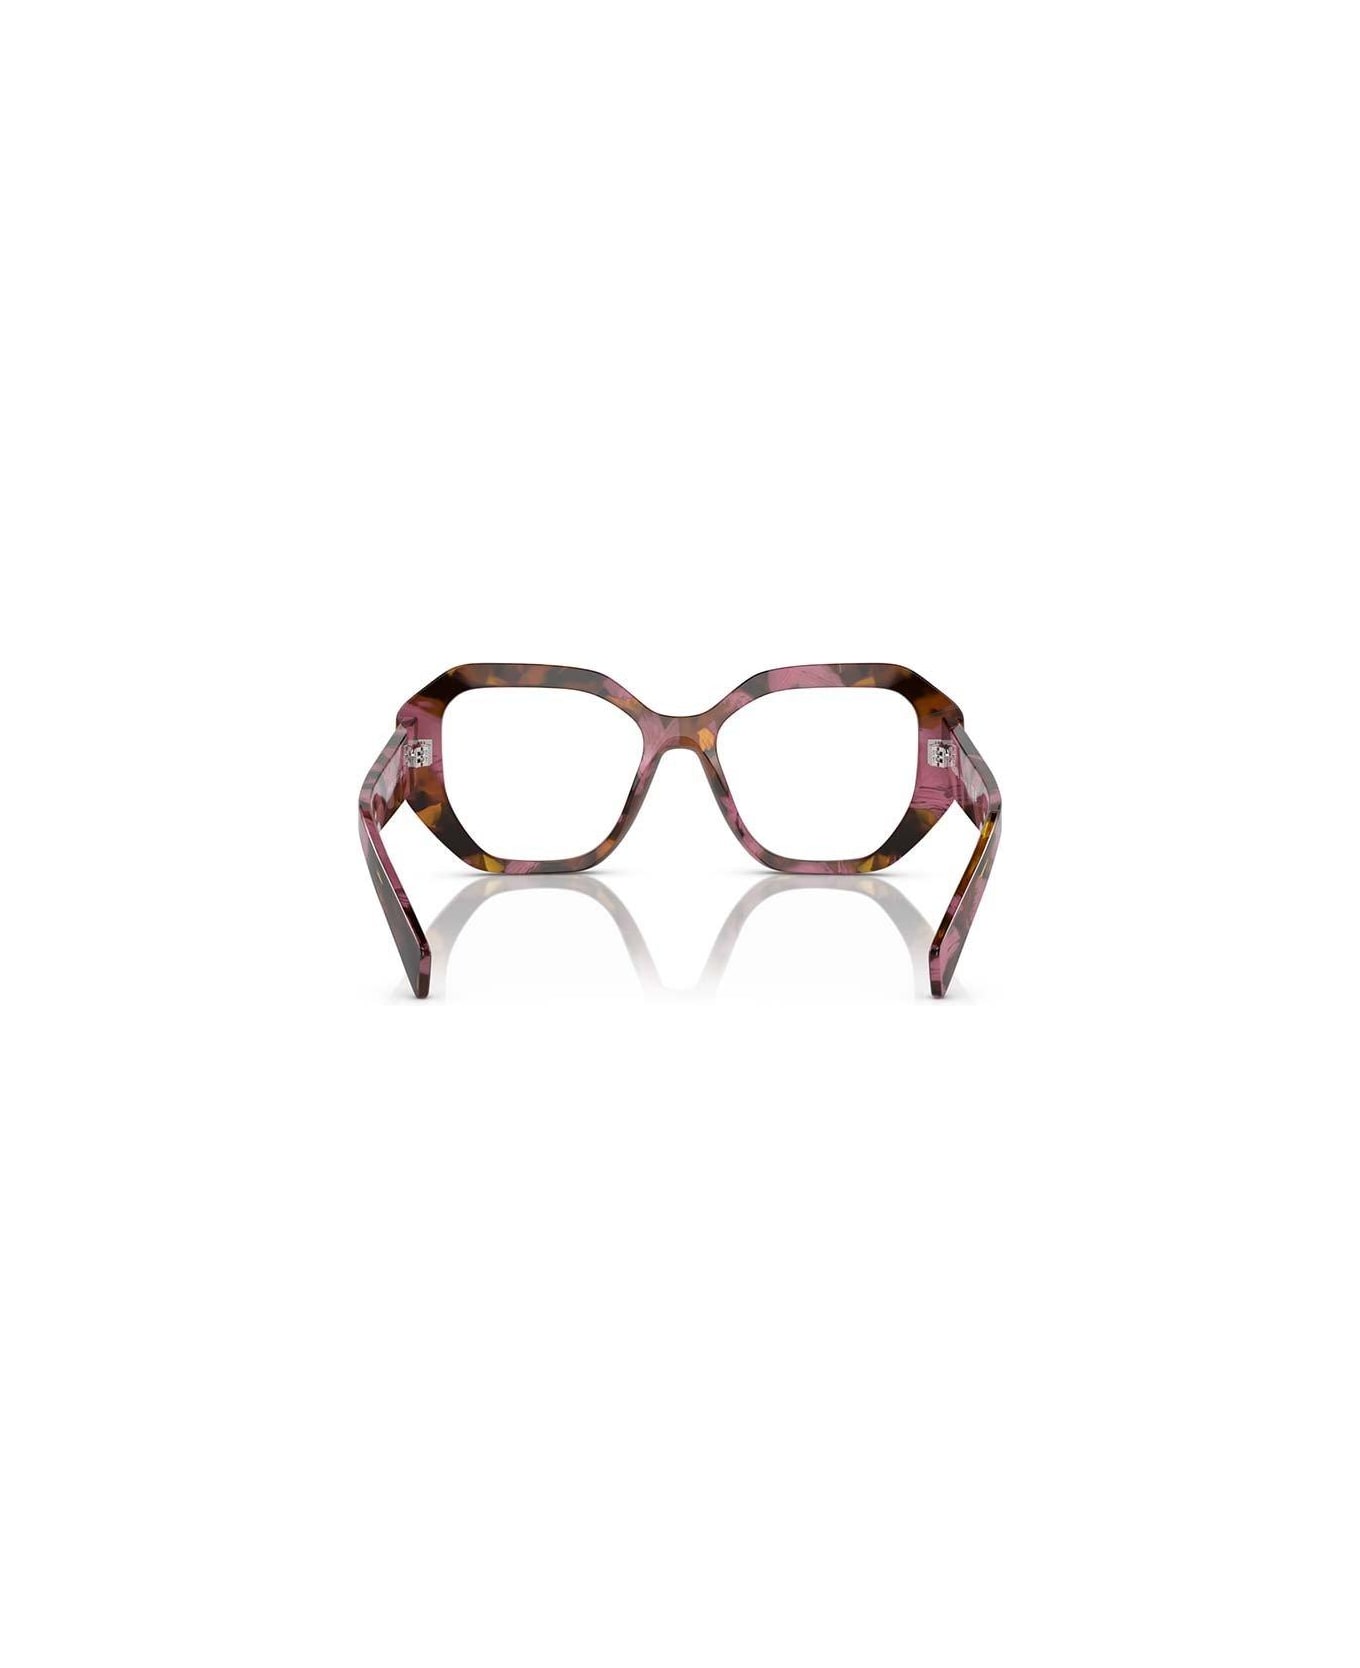 Prada Eyewear Irregular-frame Glasses - 18N1O1